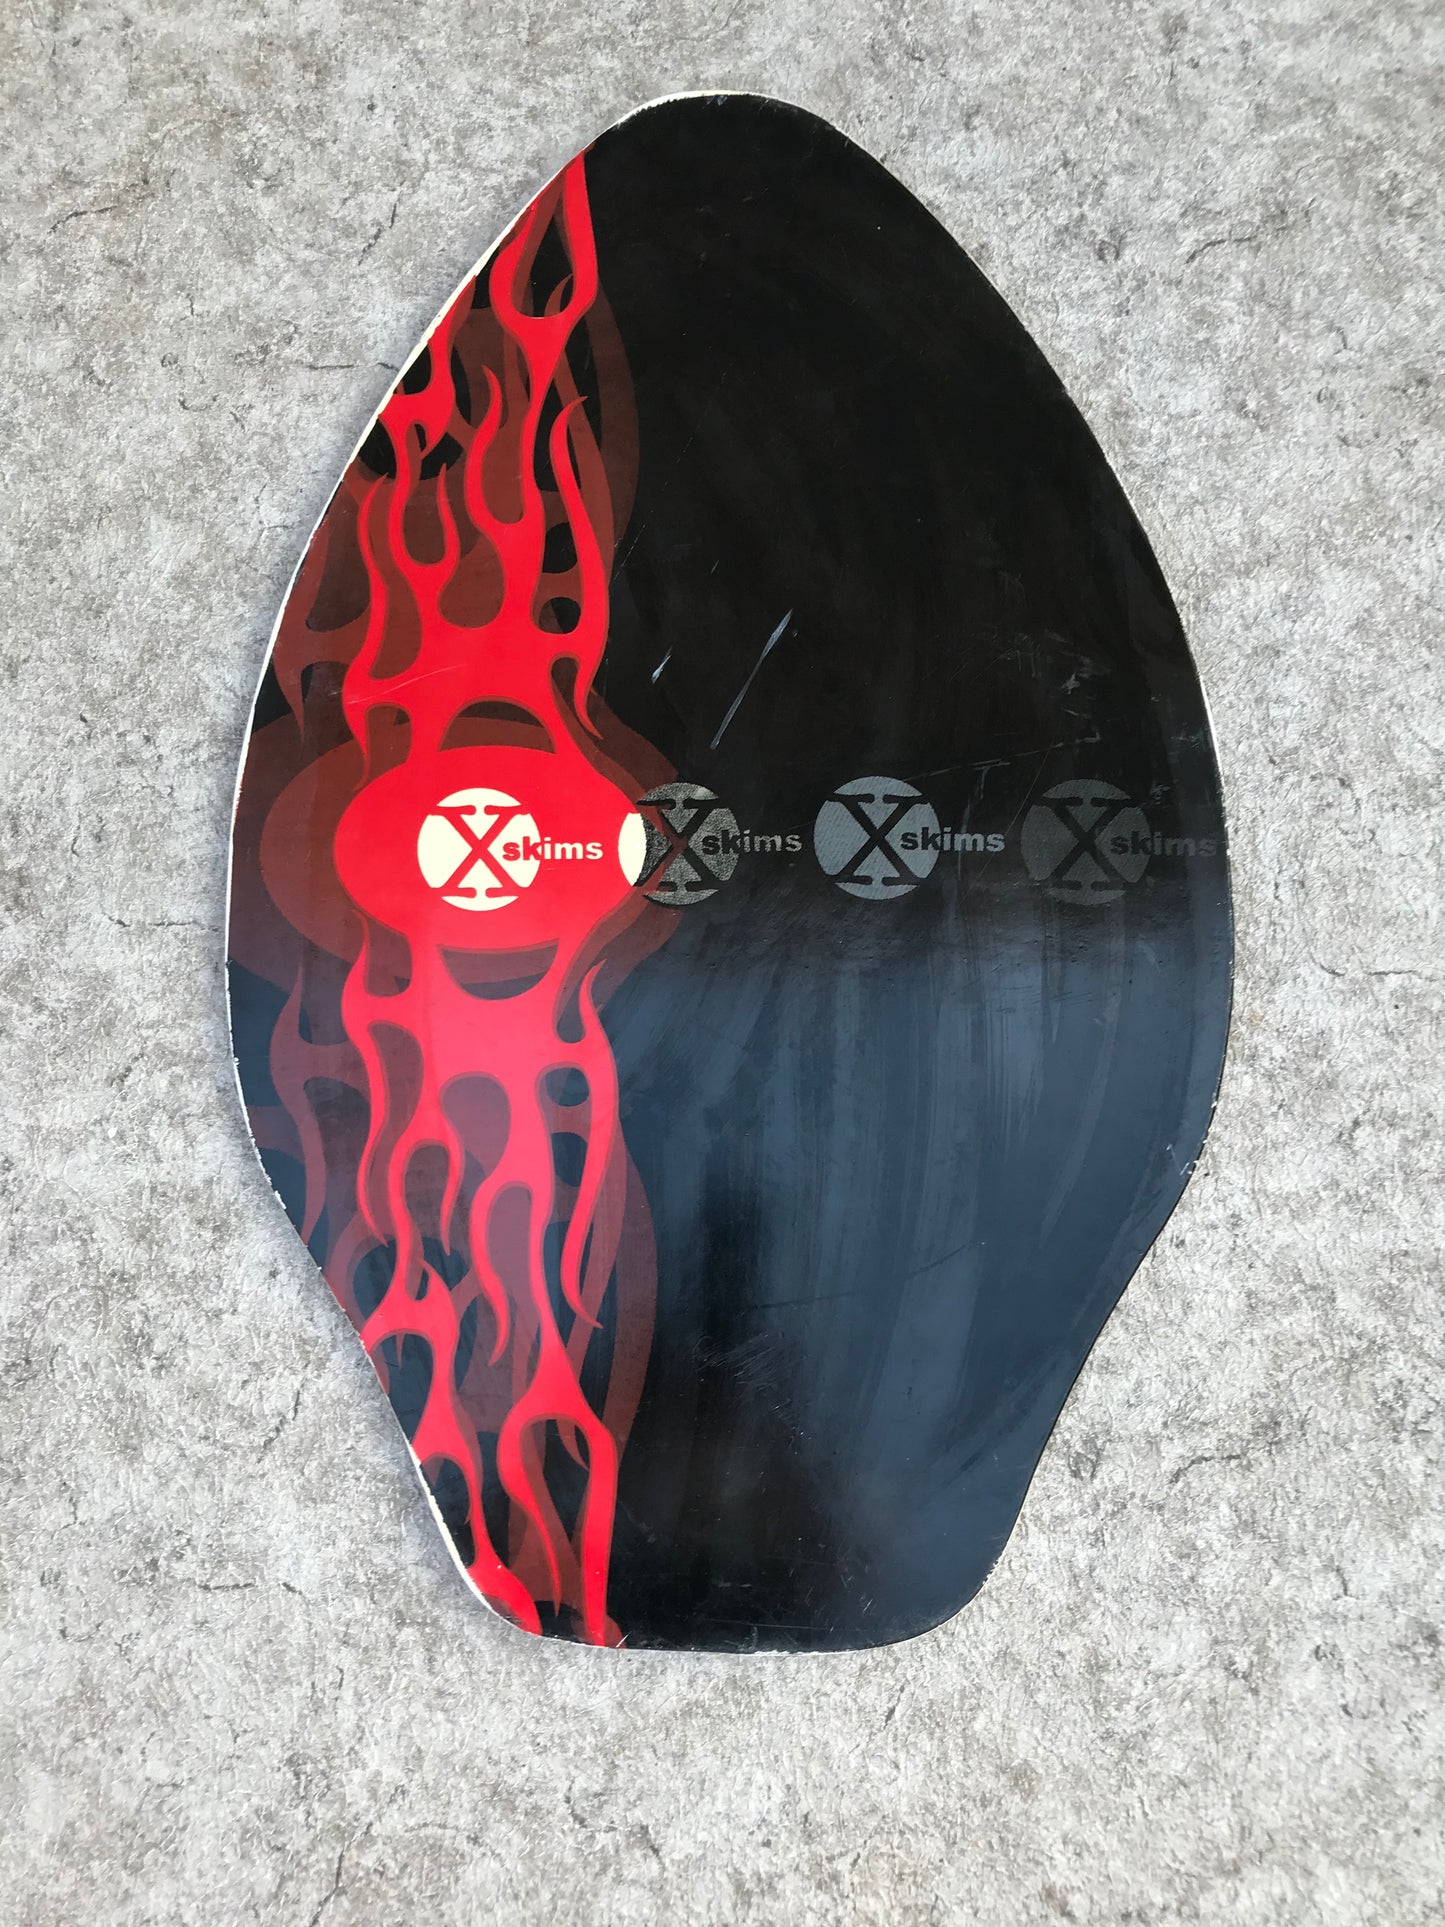 Surf SkimBoard Wood X Skim Red Black 32 x 20 inch